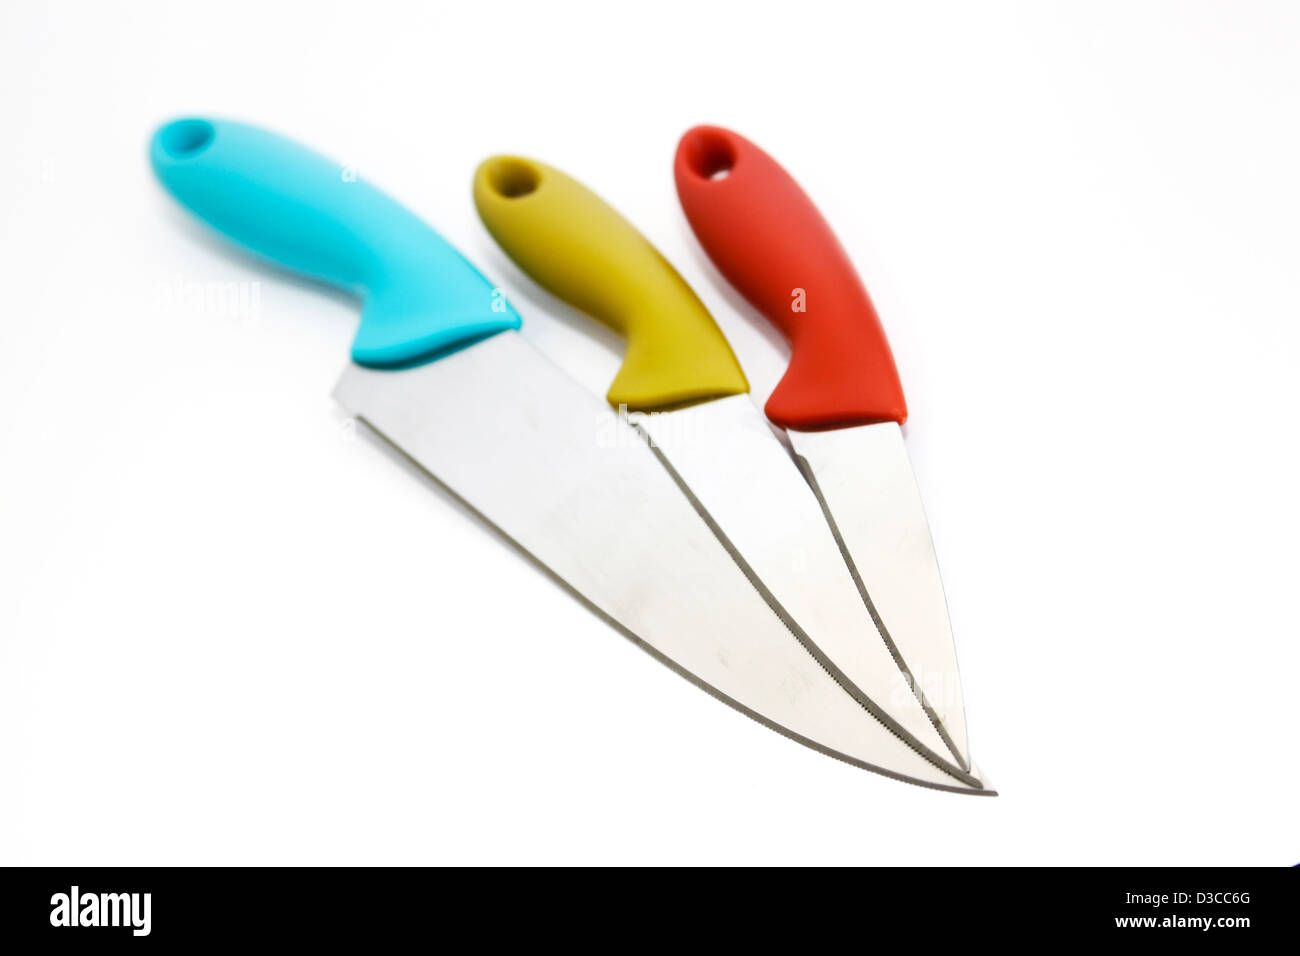 Drei Küchenmesser mit bunten Kunststoffgriffen Stockfoto